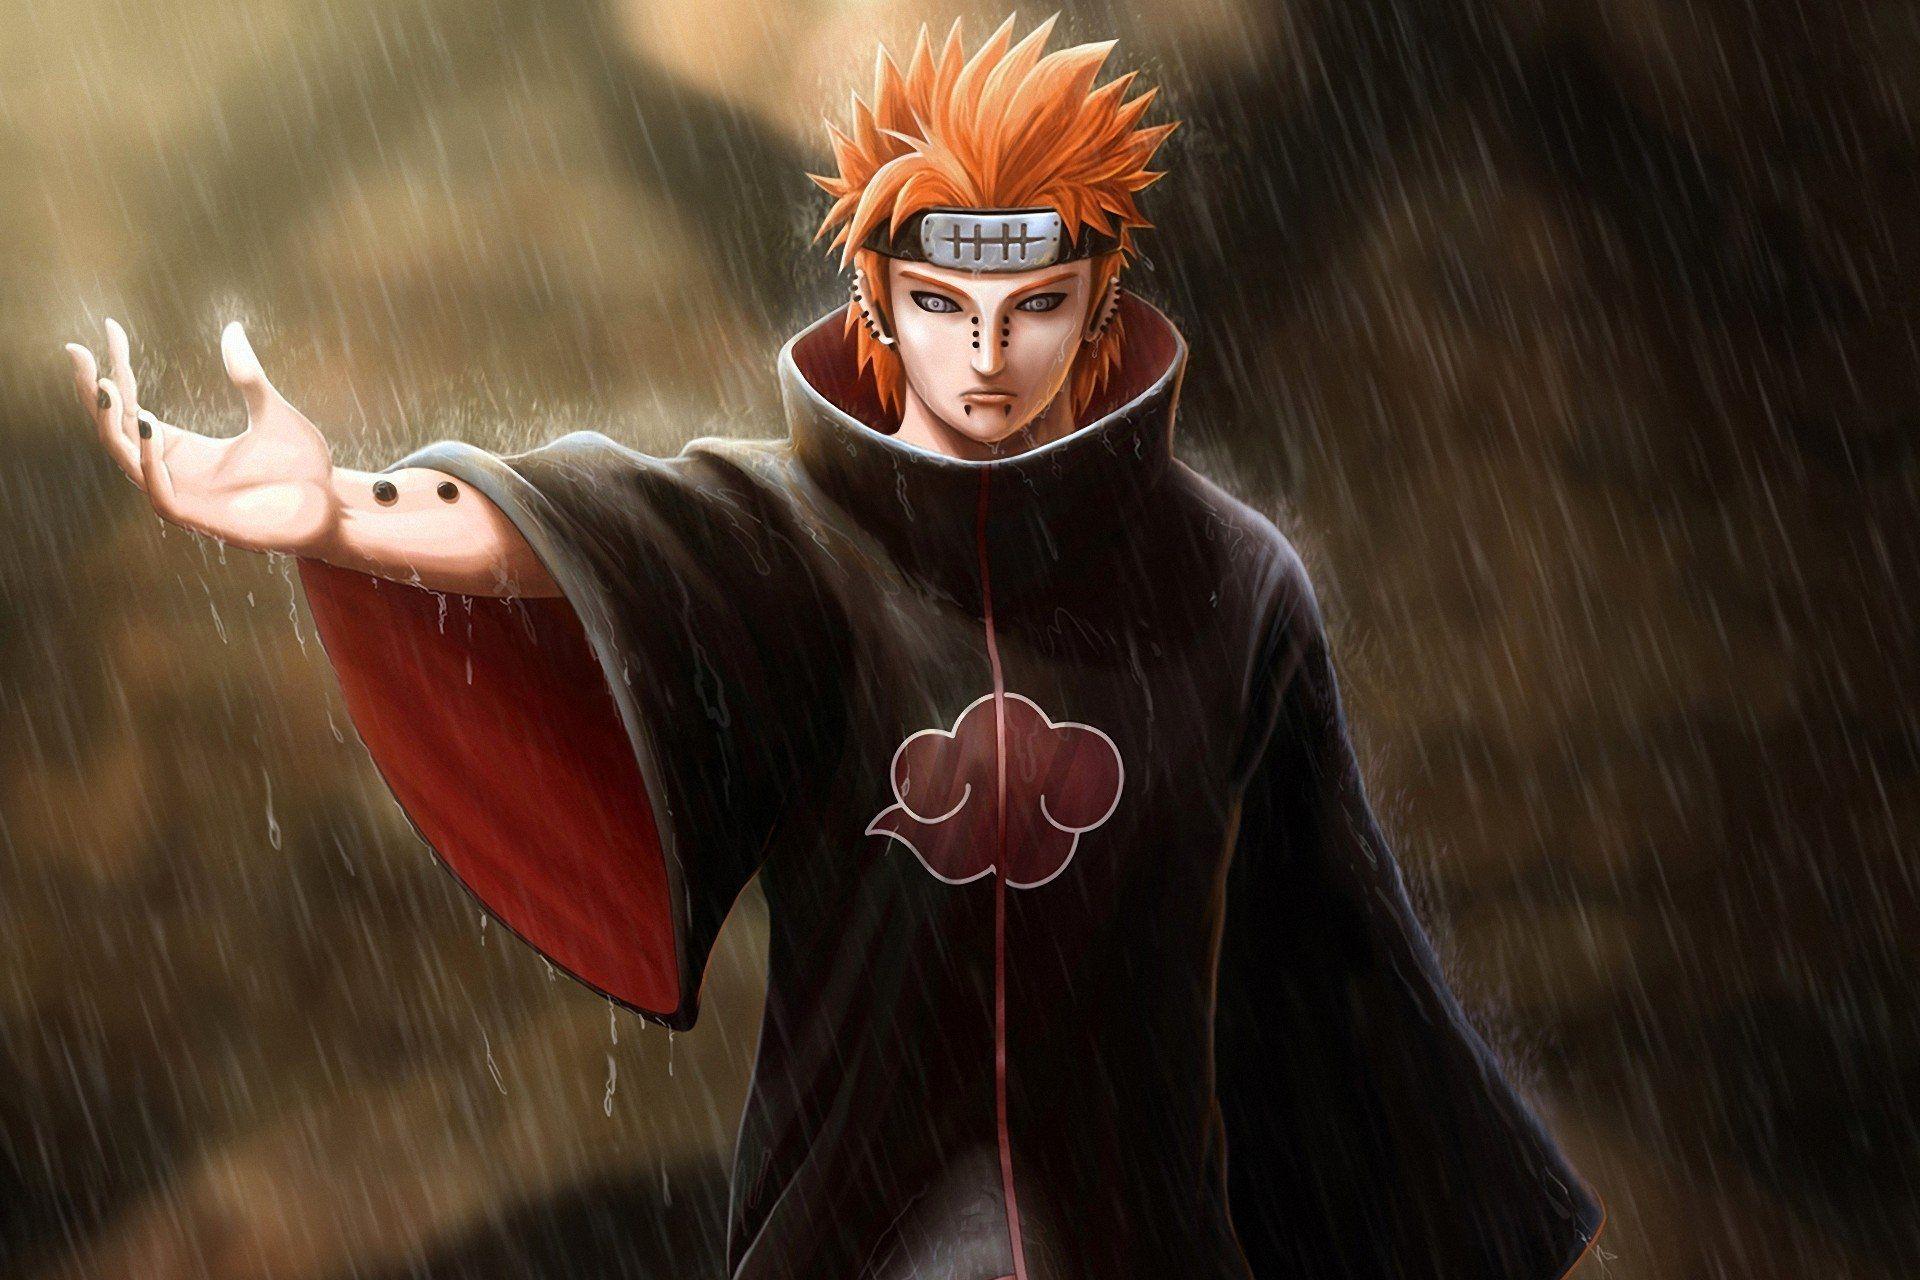 Pain In Naruto Wallpaper Hd gambar ke 1